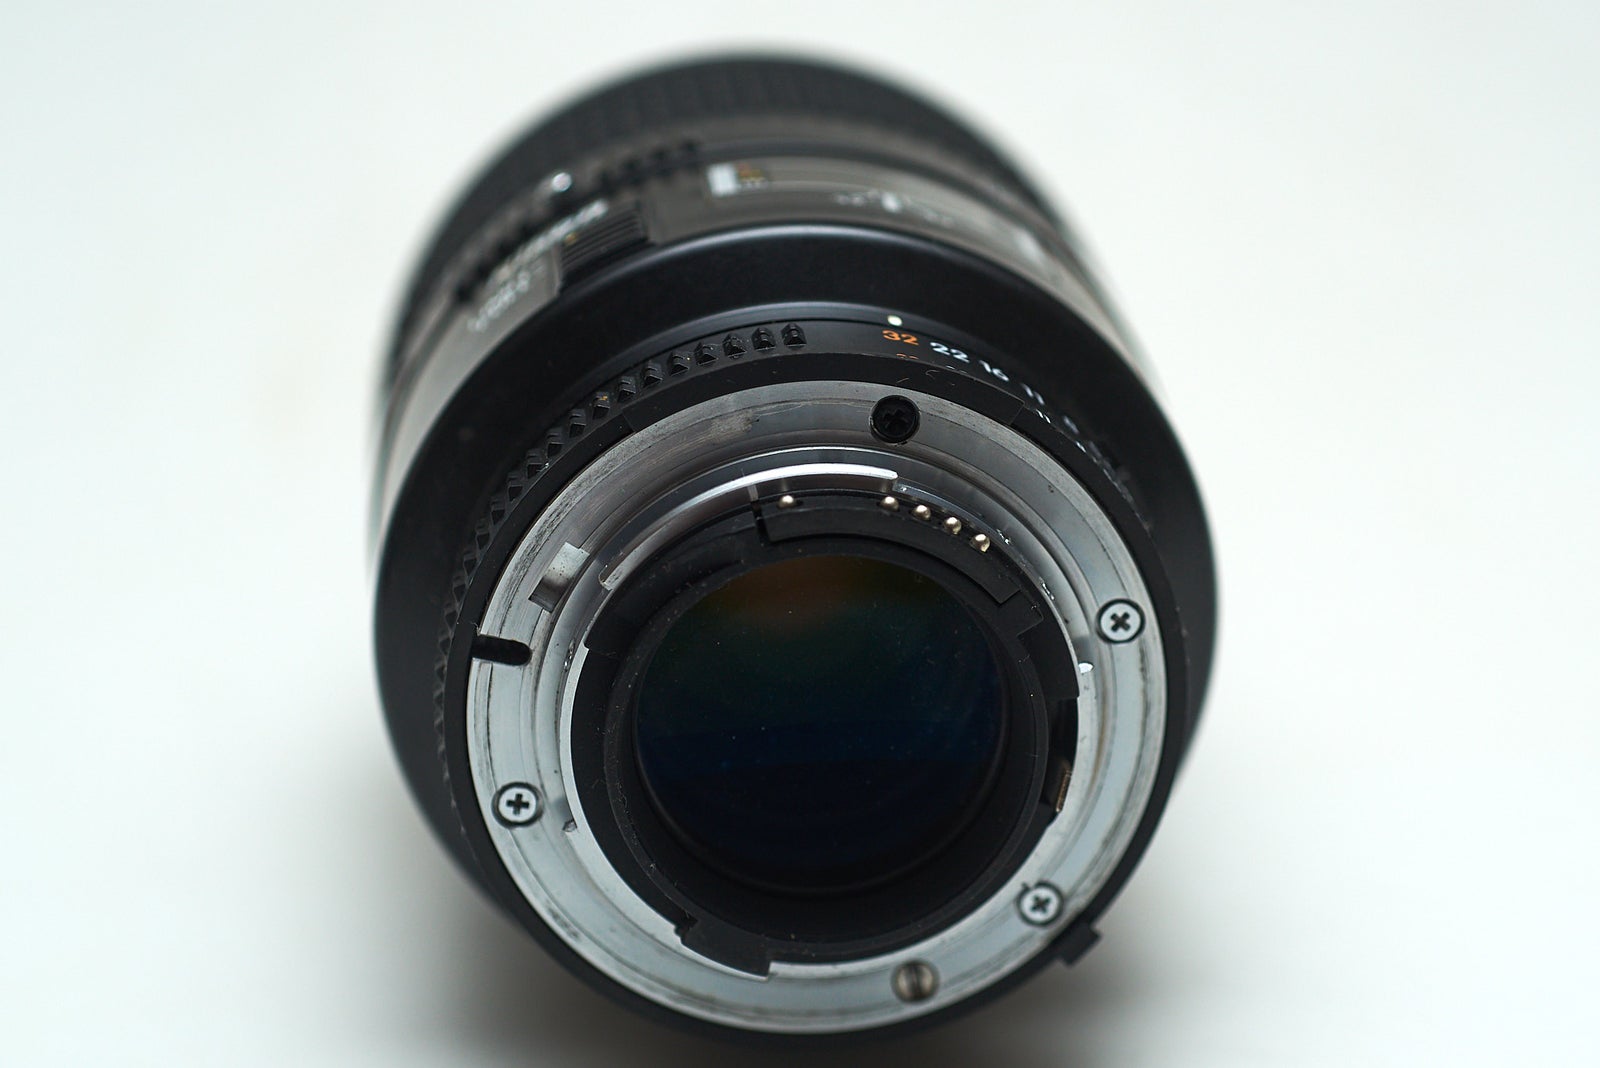 Macro, Nikon, AF Micro Nikkor 105mm 1:2.8D